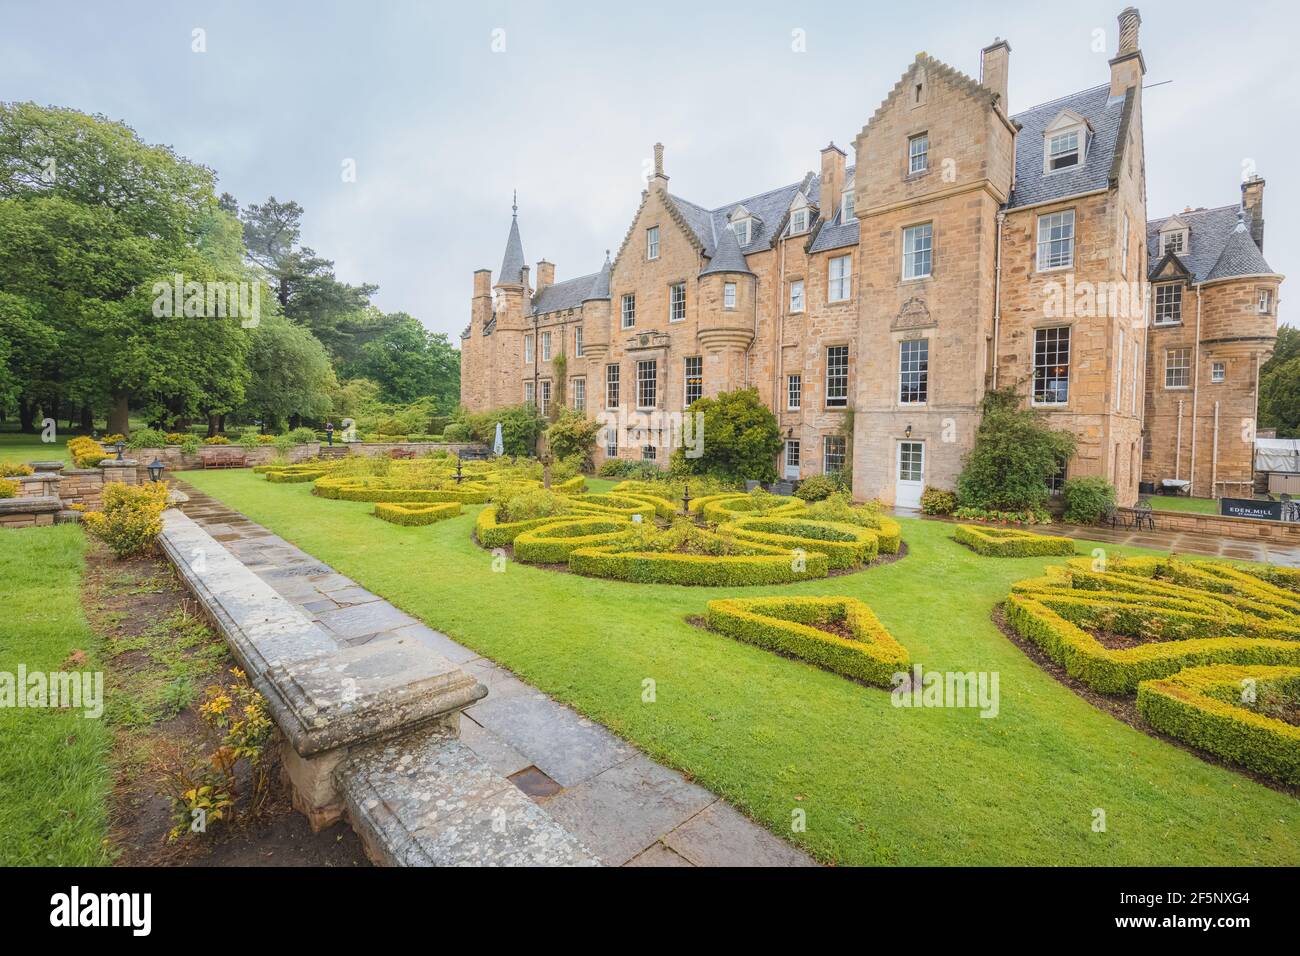 Musselburgh, Schottland - Juni 5 2019: Landschaftsgärten und Herrenhaus des historischen Carberry Tower Mansion House aus dem 15th. Jahrhundert in Musselburgh, Schottland Stockfoto